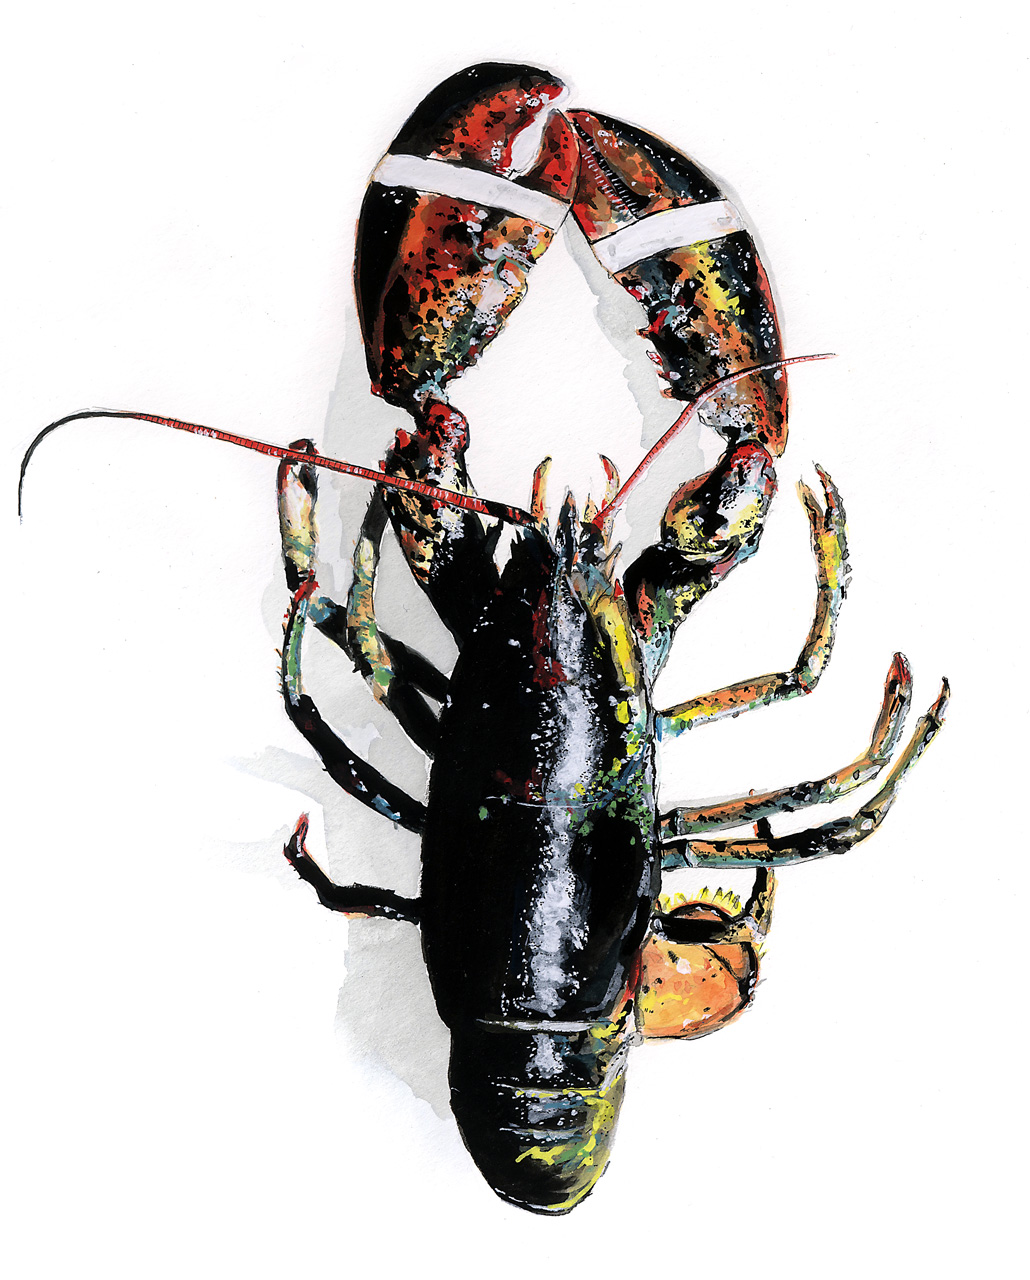 tram nguyen lobster illustration